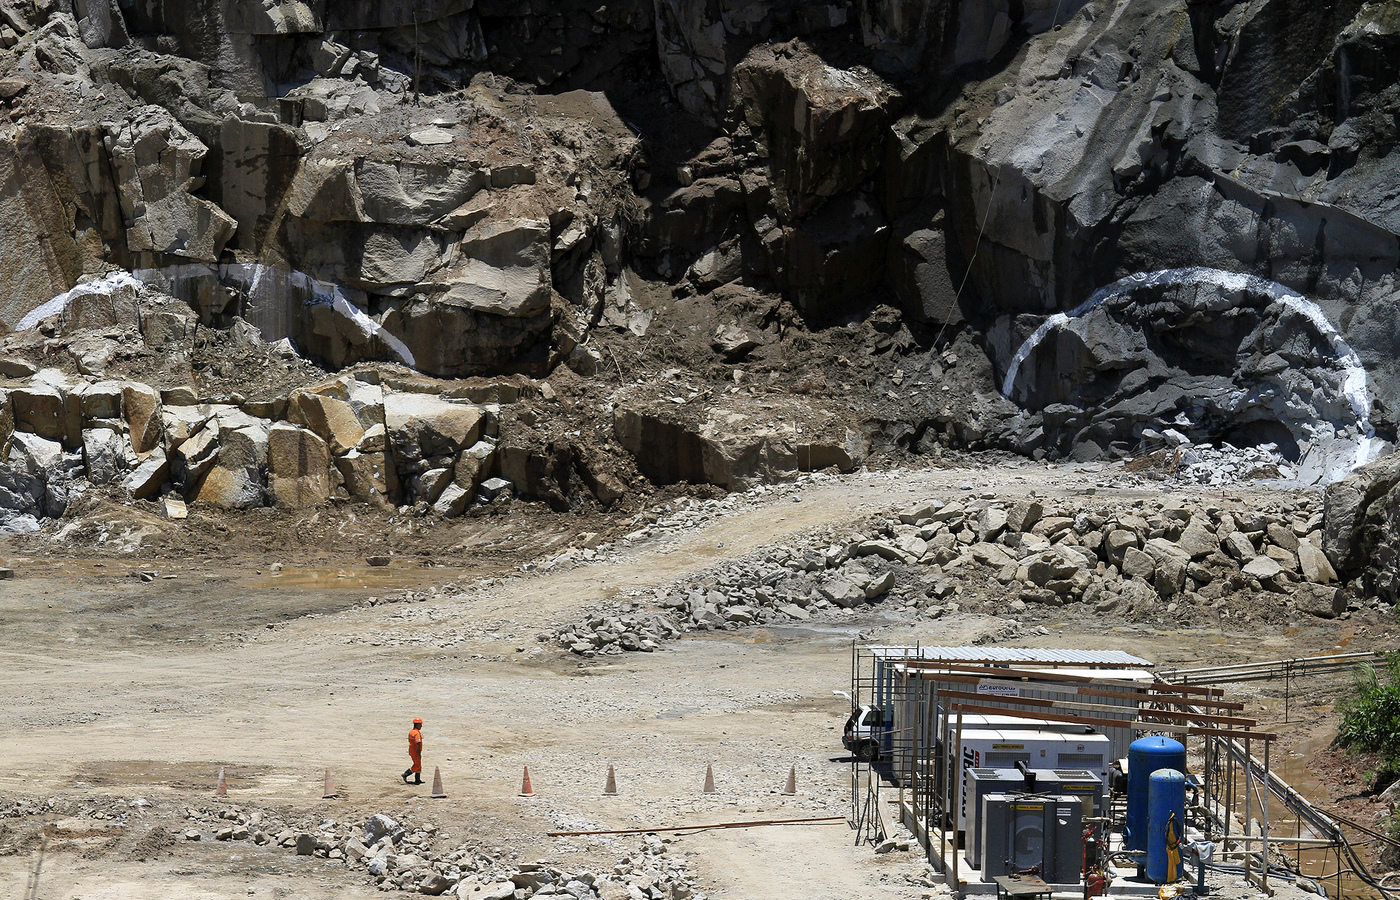 PERSPECTIVA: Con nuevos proyectos, la minería brasileña debería retomar el crecimiento